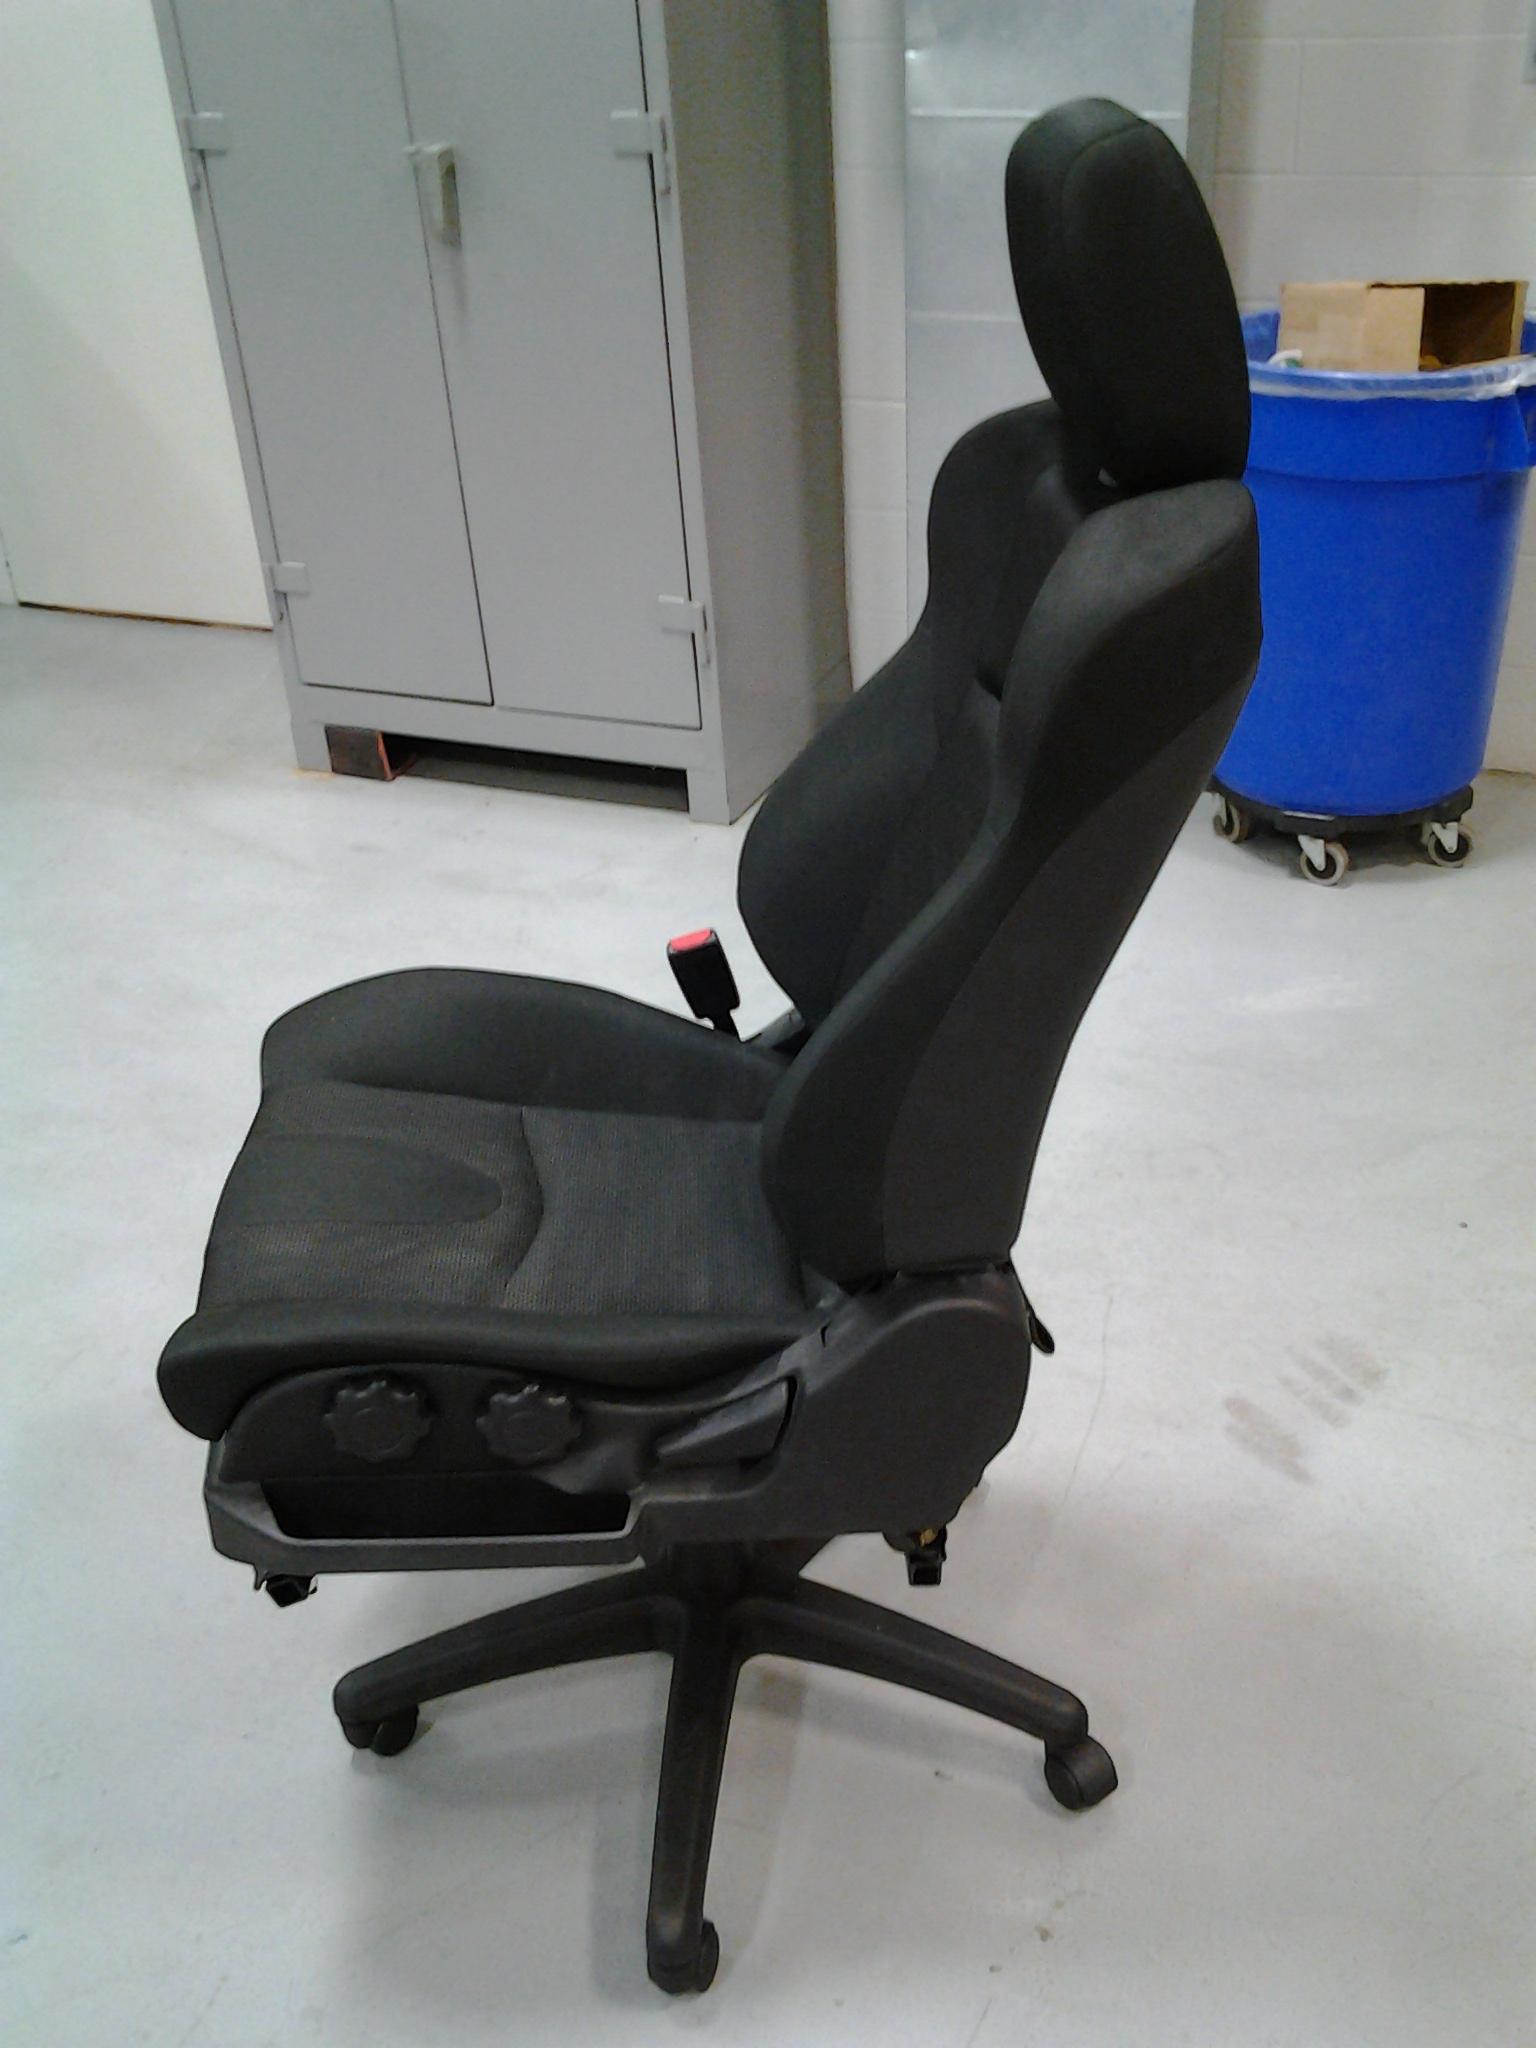 Mesmerizing-Corvette-Office-Chair-15-For-.jpg